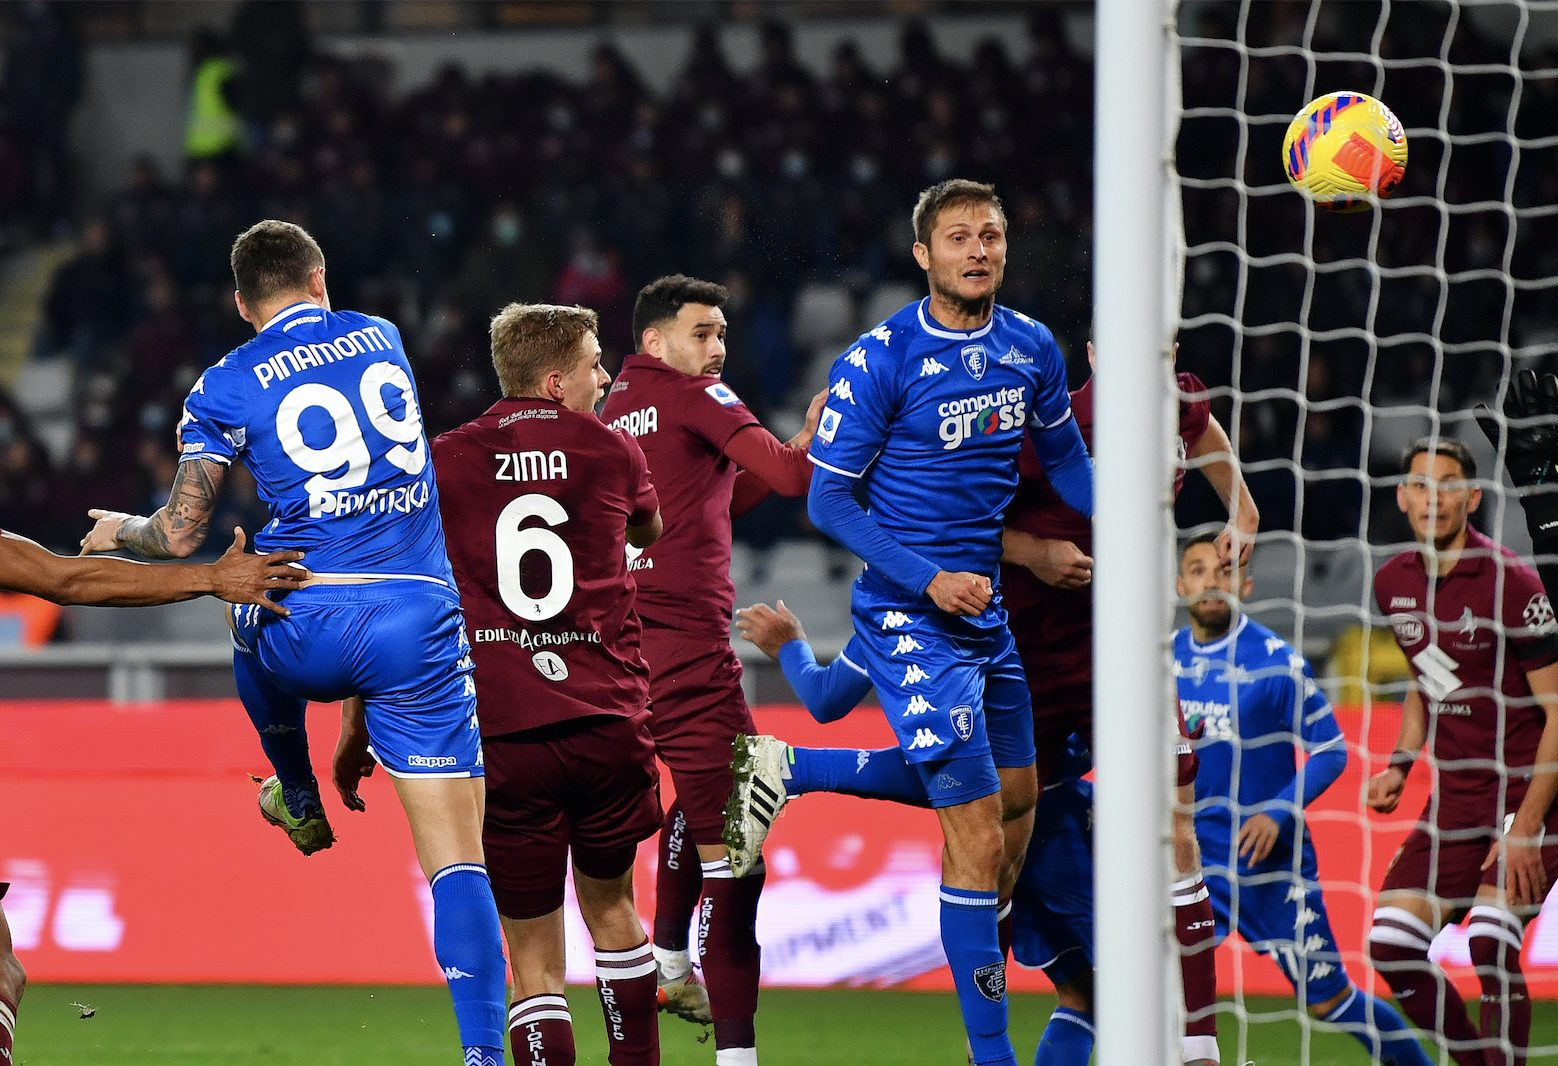 Отмененный гол Миранчука не позволил «Торино» выиграть у «Эмполи» матче 9-го тура Серии А